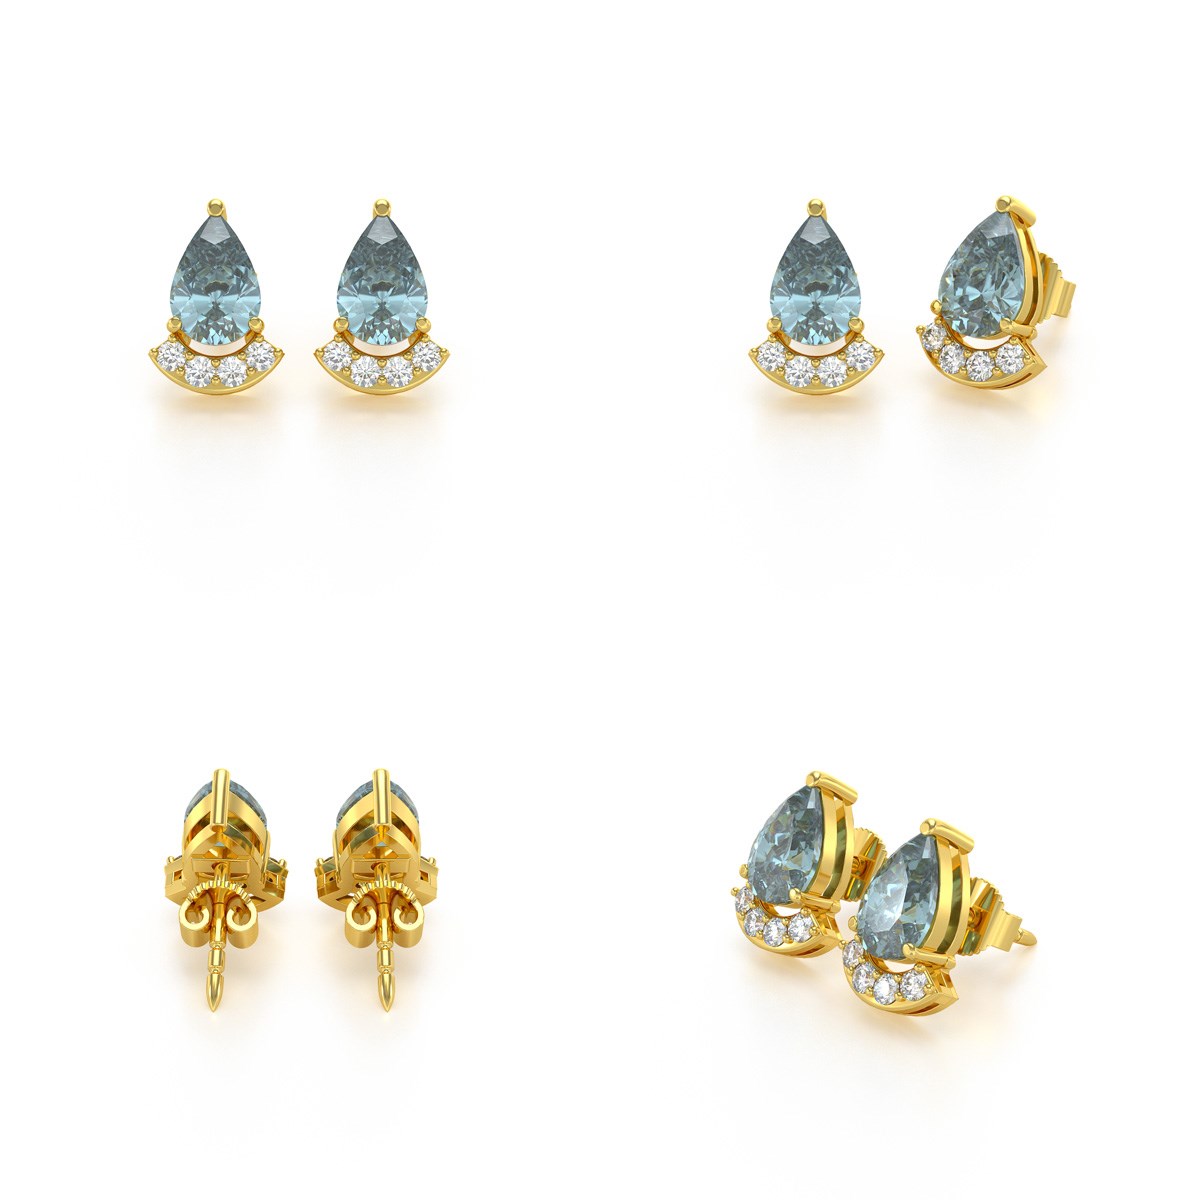 Boucles d'oreilles ADEN Or 585 Jaune Aigue-Marine forme Poire et Diamants 1.4grs - vue 4